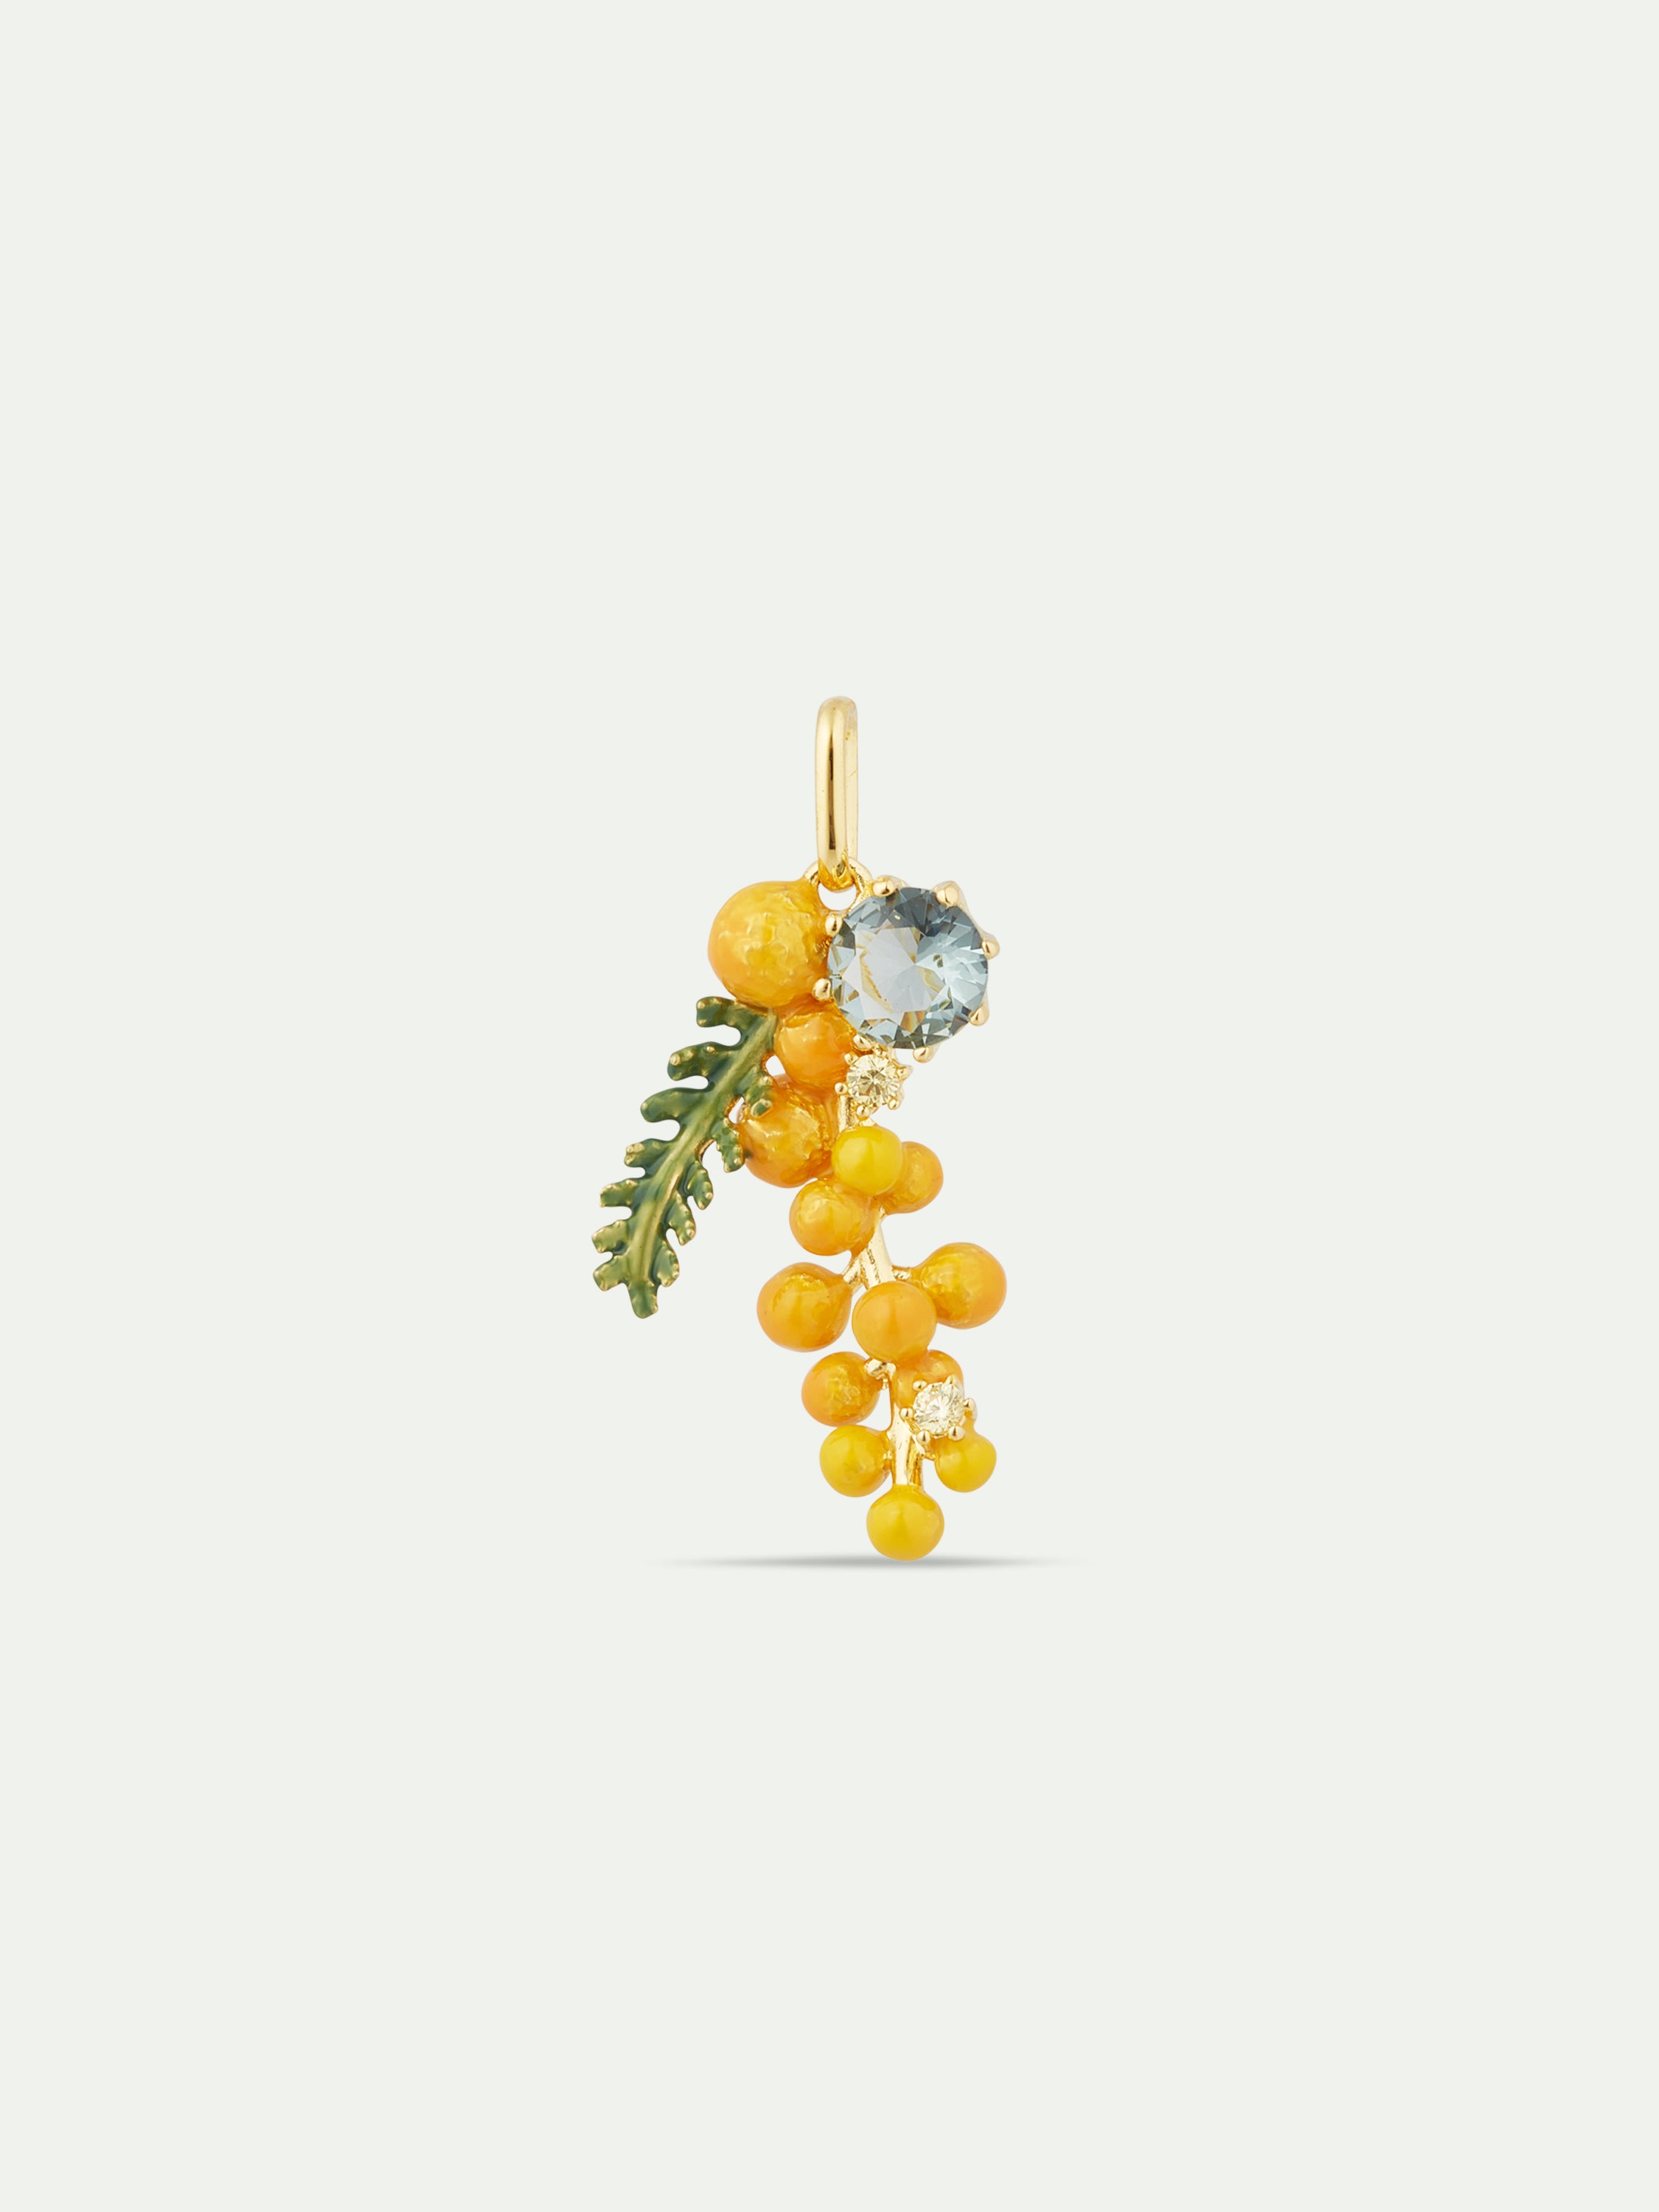 Pendentif mimosa : Délicatesse et Renouveau